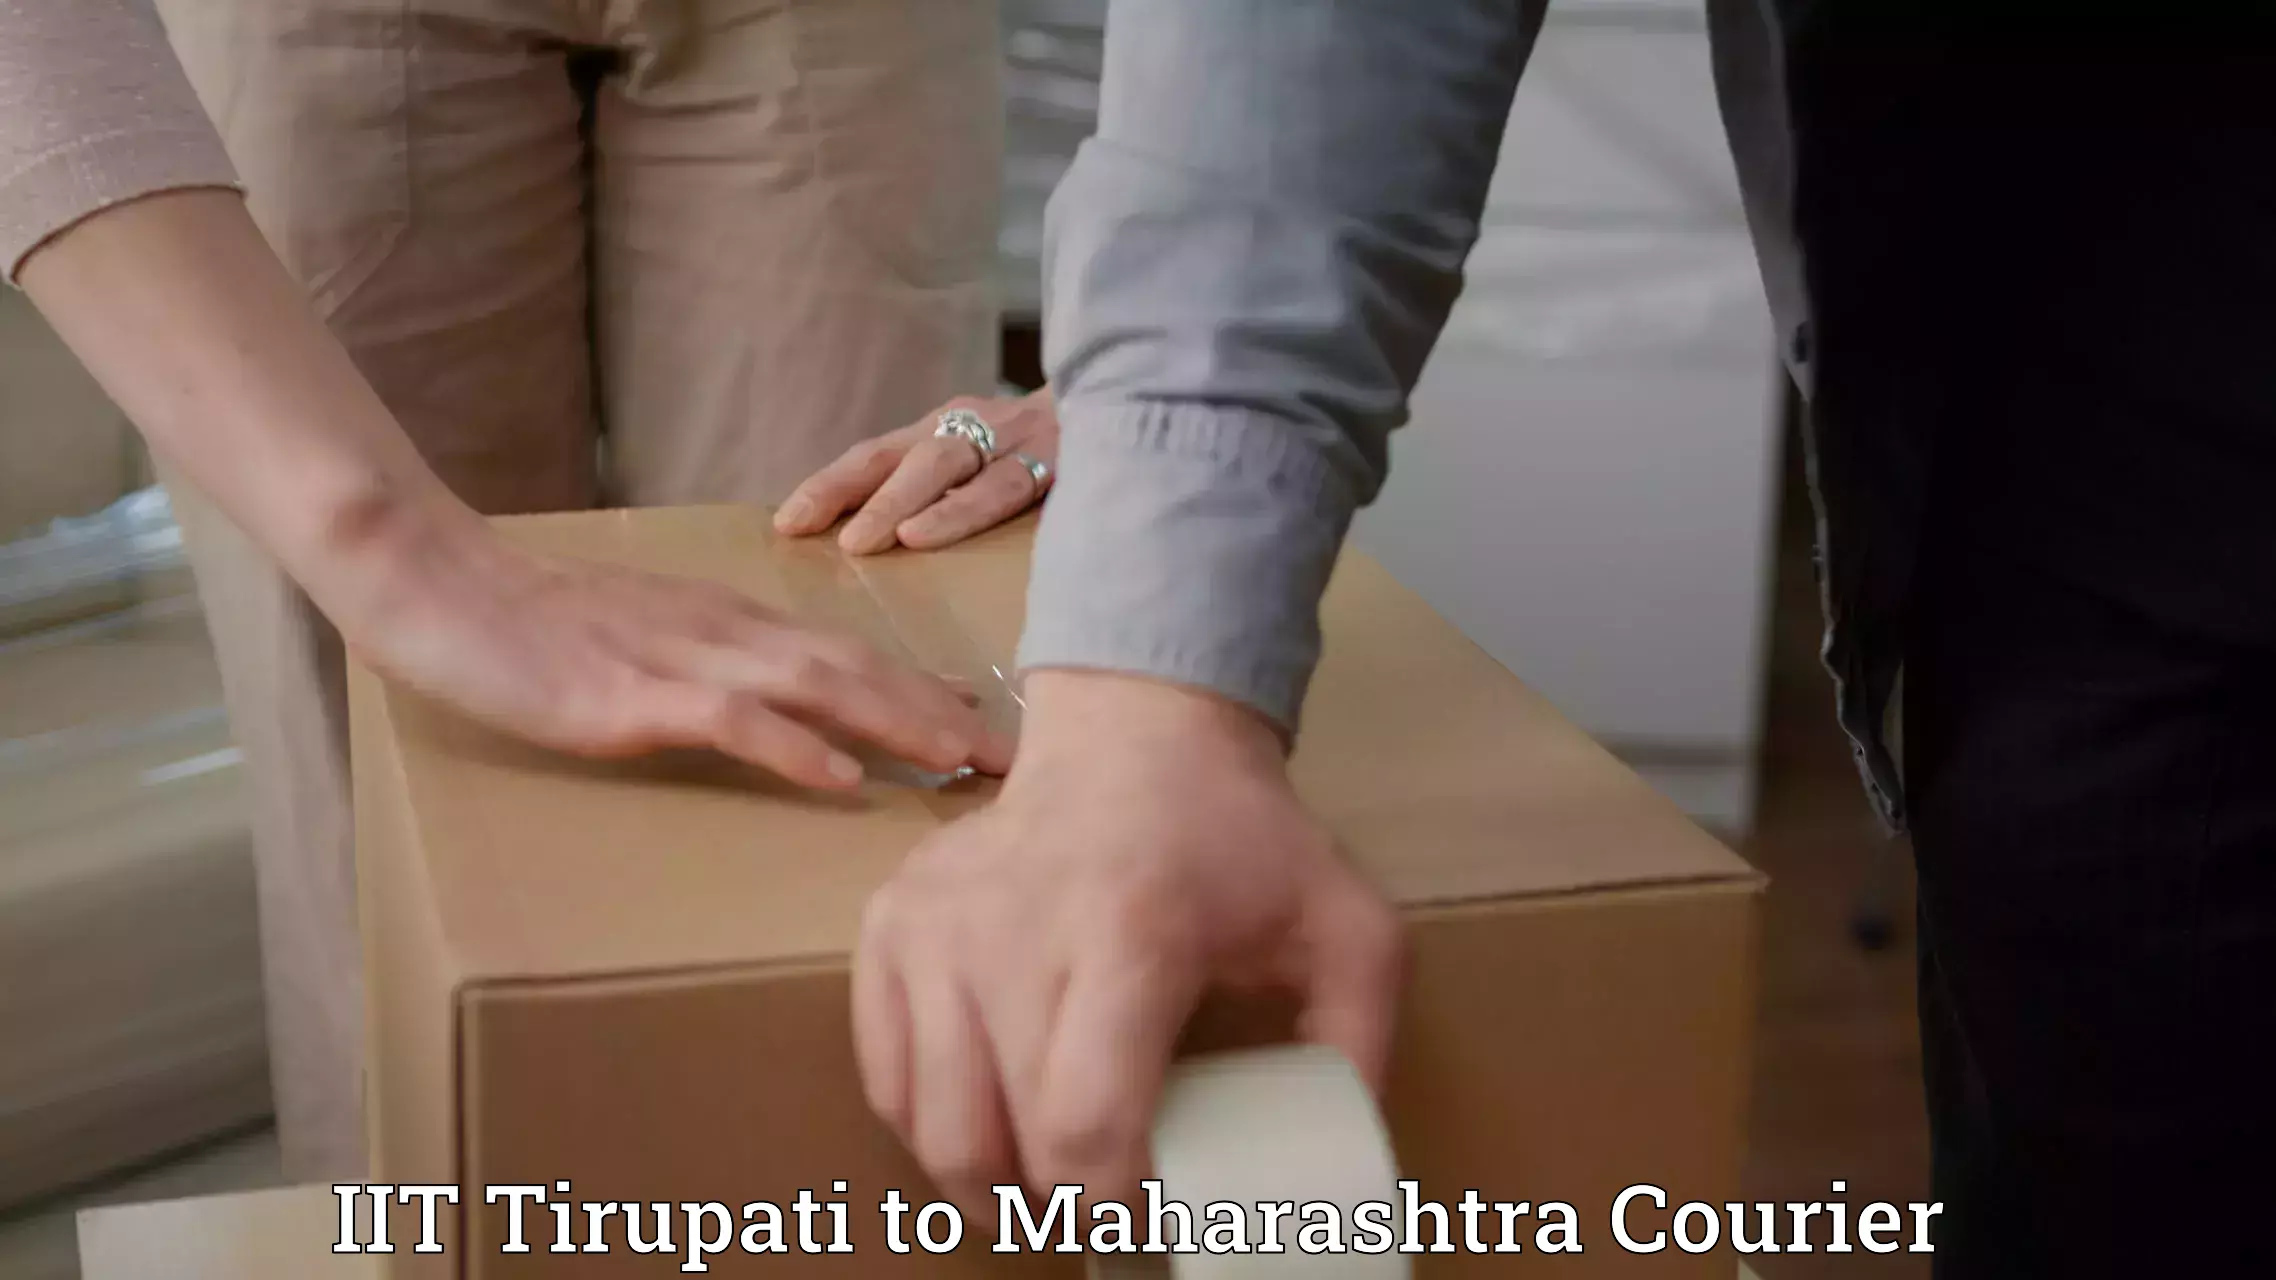 Express postal services IIT Tirupati to Mantha